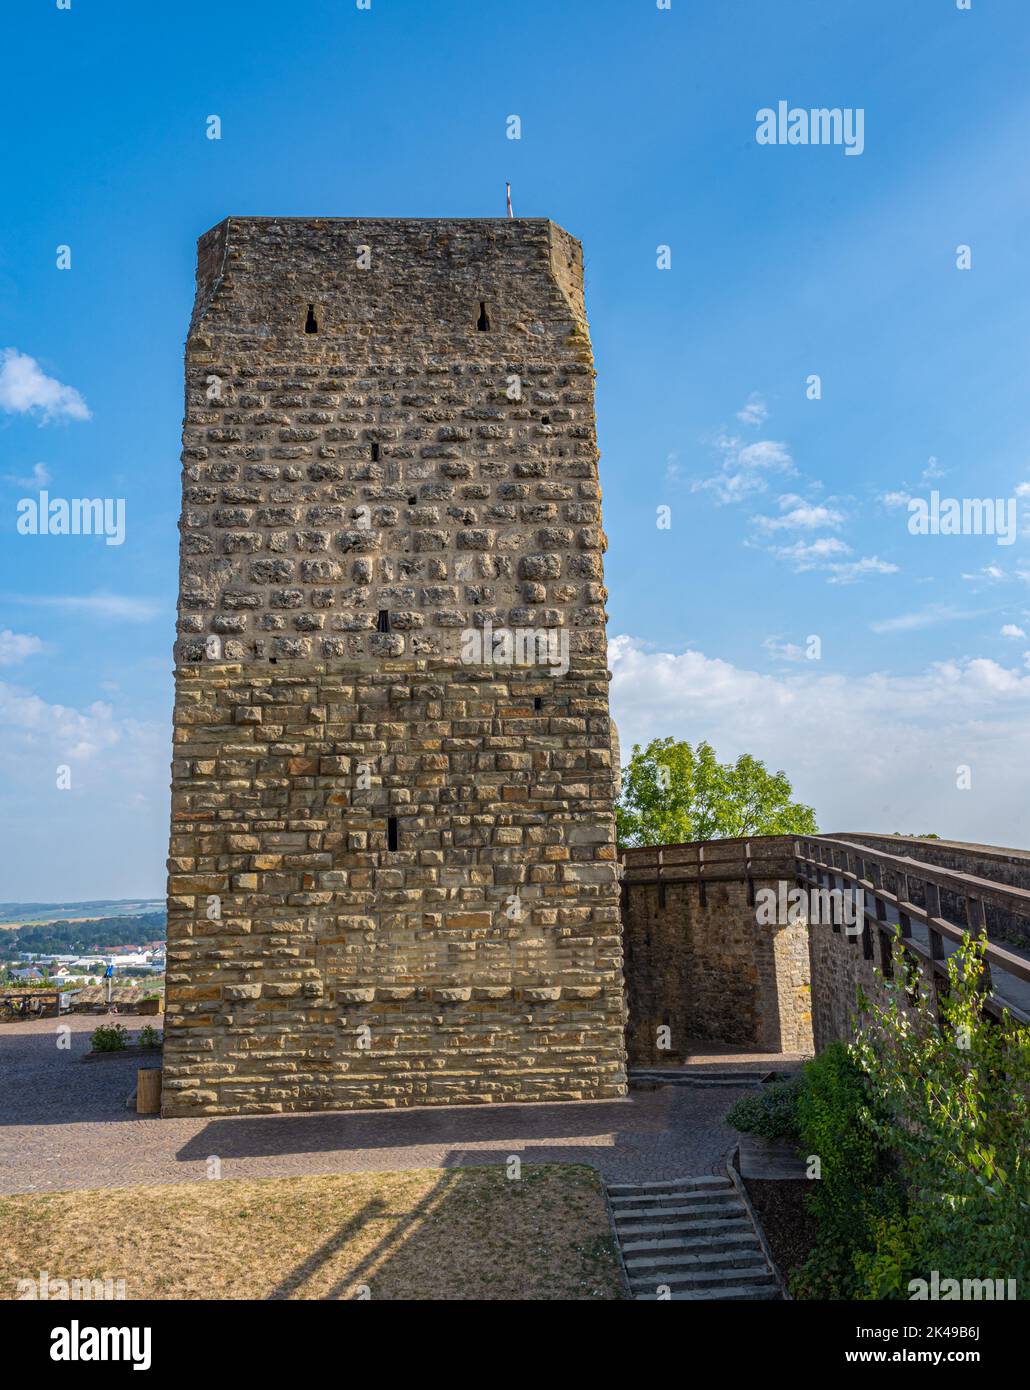 Torre rossa parte delle fortificazioni storiche della città di Bad Wimpfen. Valle del Neckar, Kraichgau, Baden-Württemberg, Germania, Europa Foto Stock